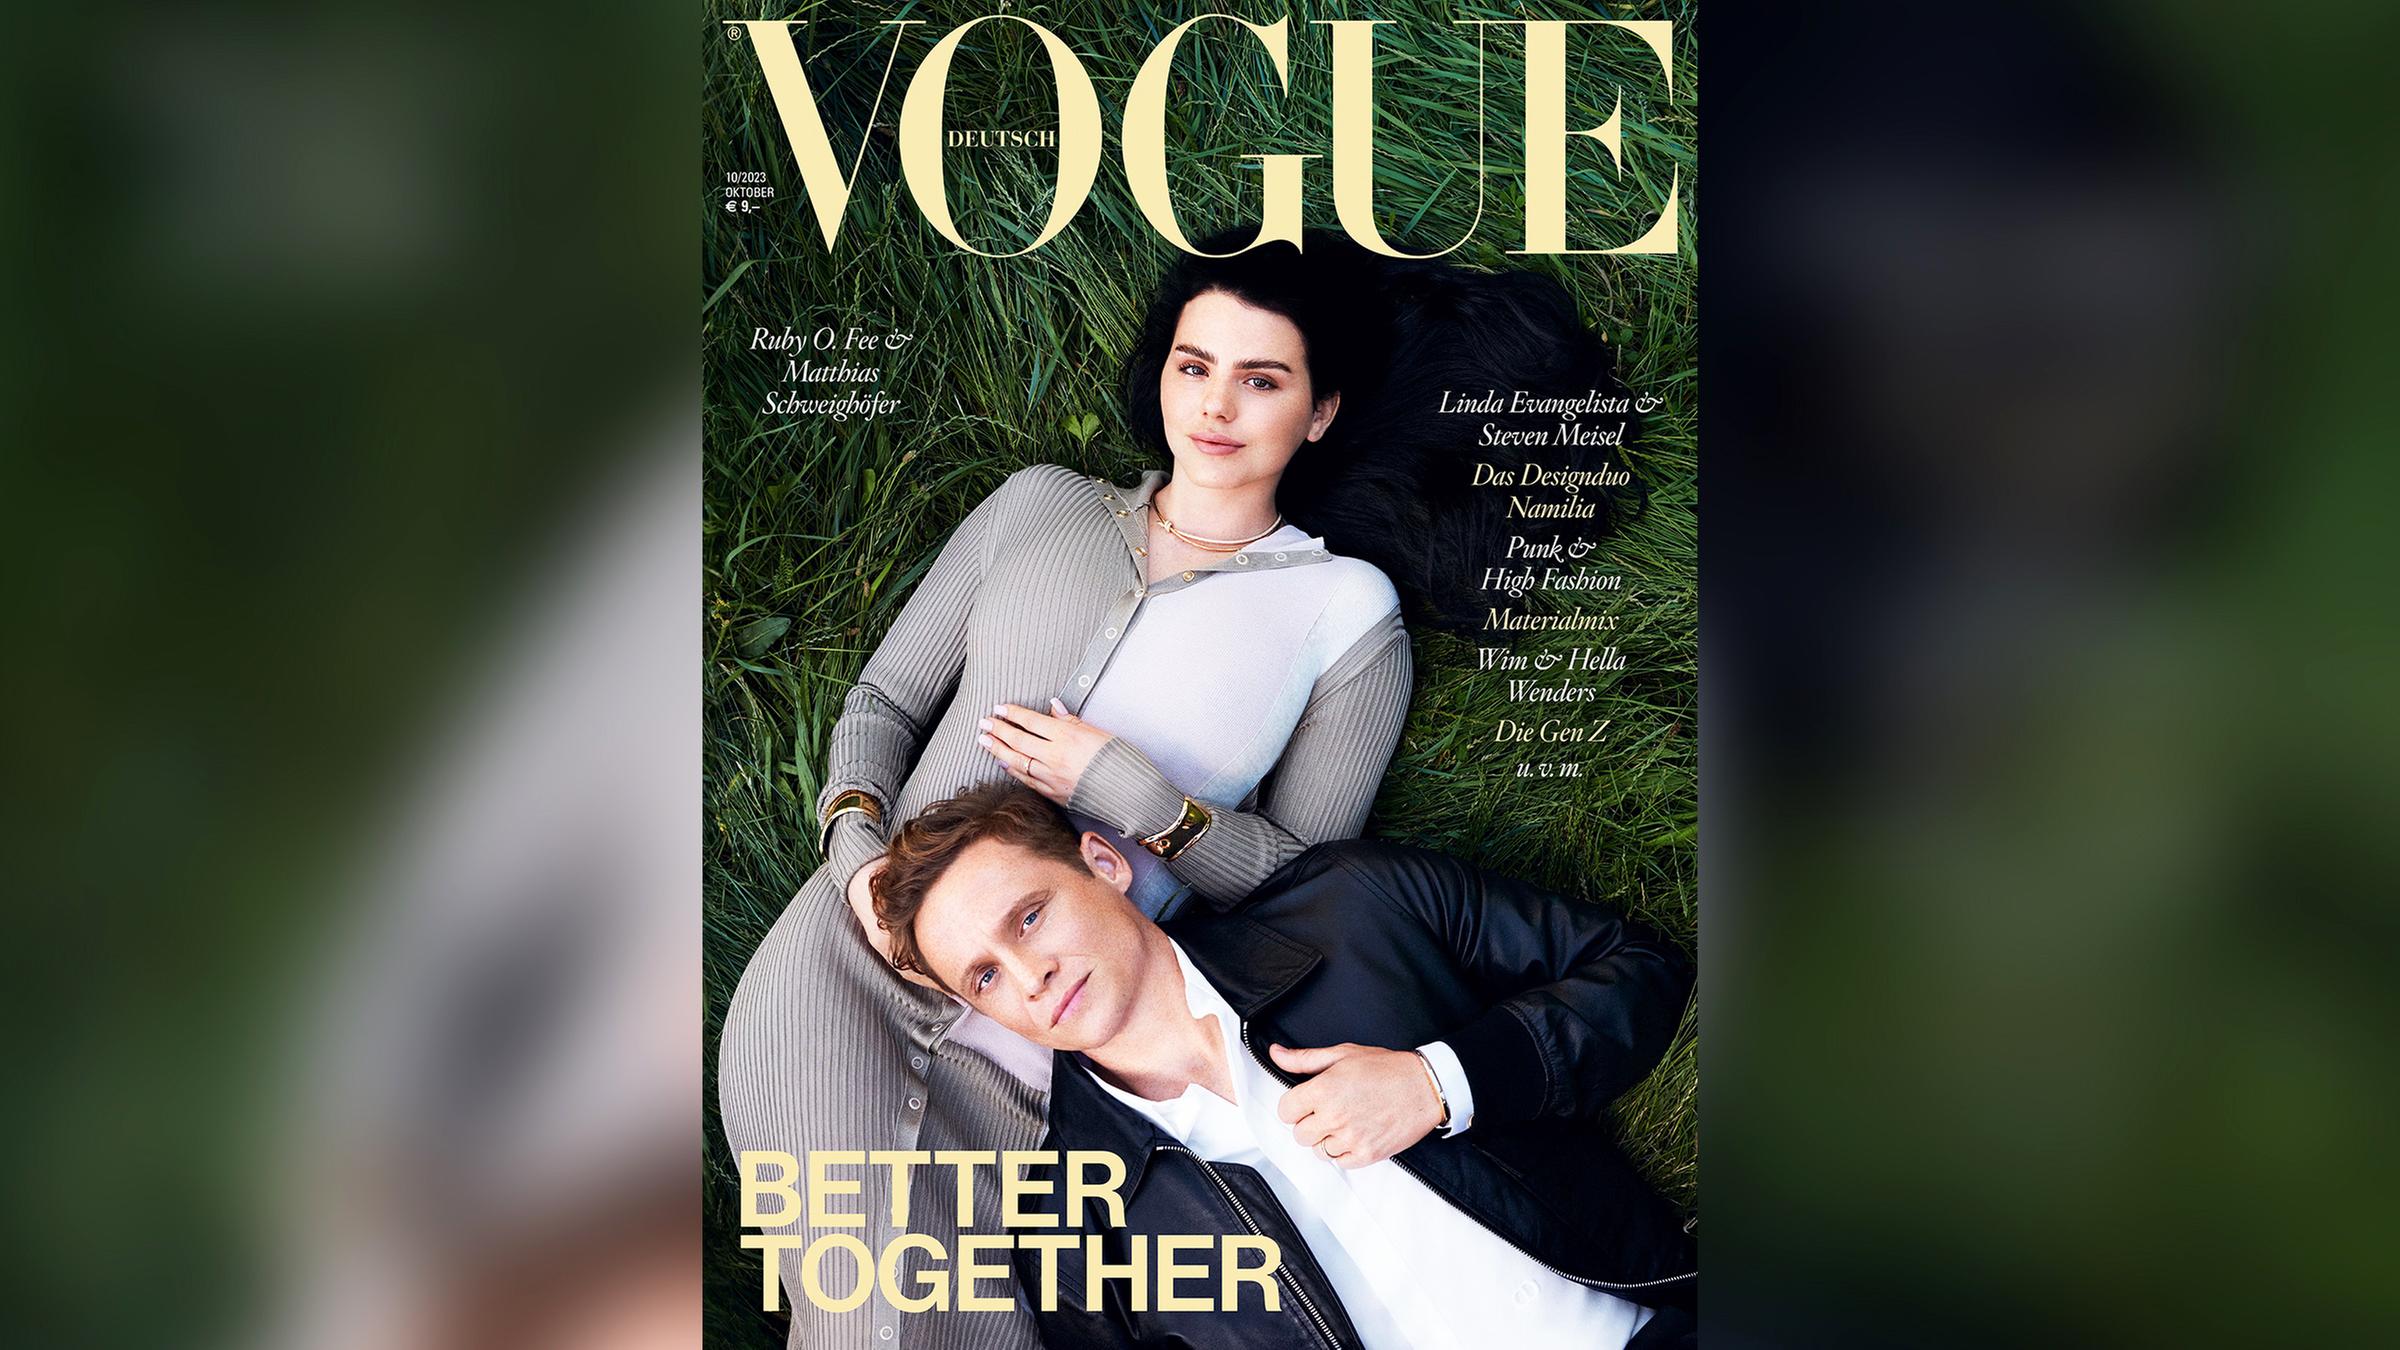 Matthias Schweighöfer und seine Freundin Ruby O. Fee auf dem Cover der Vogue